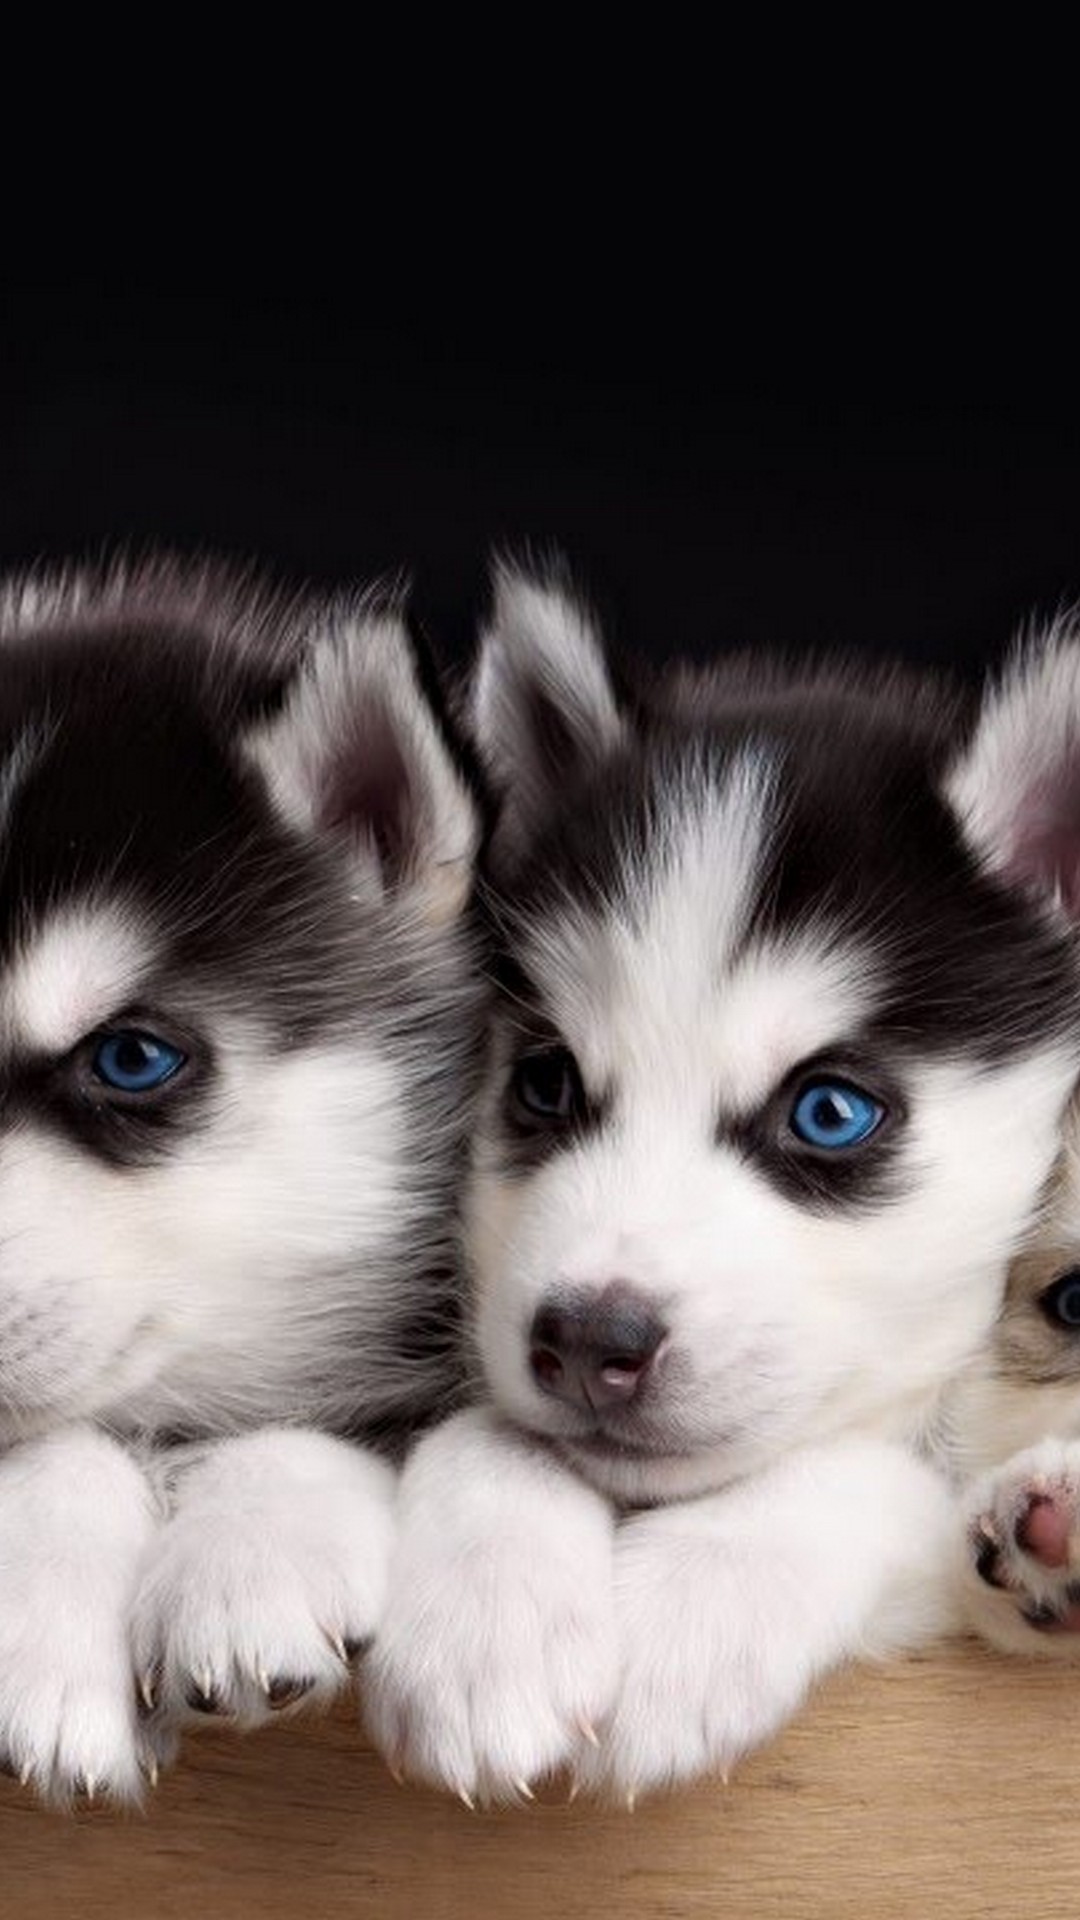 sfondi simpatici cuccioli per cellulari,husky siberiano,cane,husky siberiano in miniatura,sakhalin husky,cucciolo